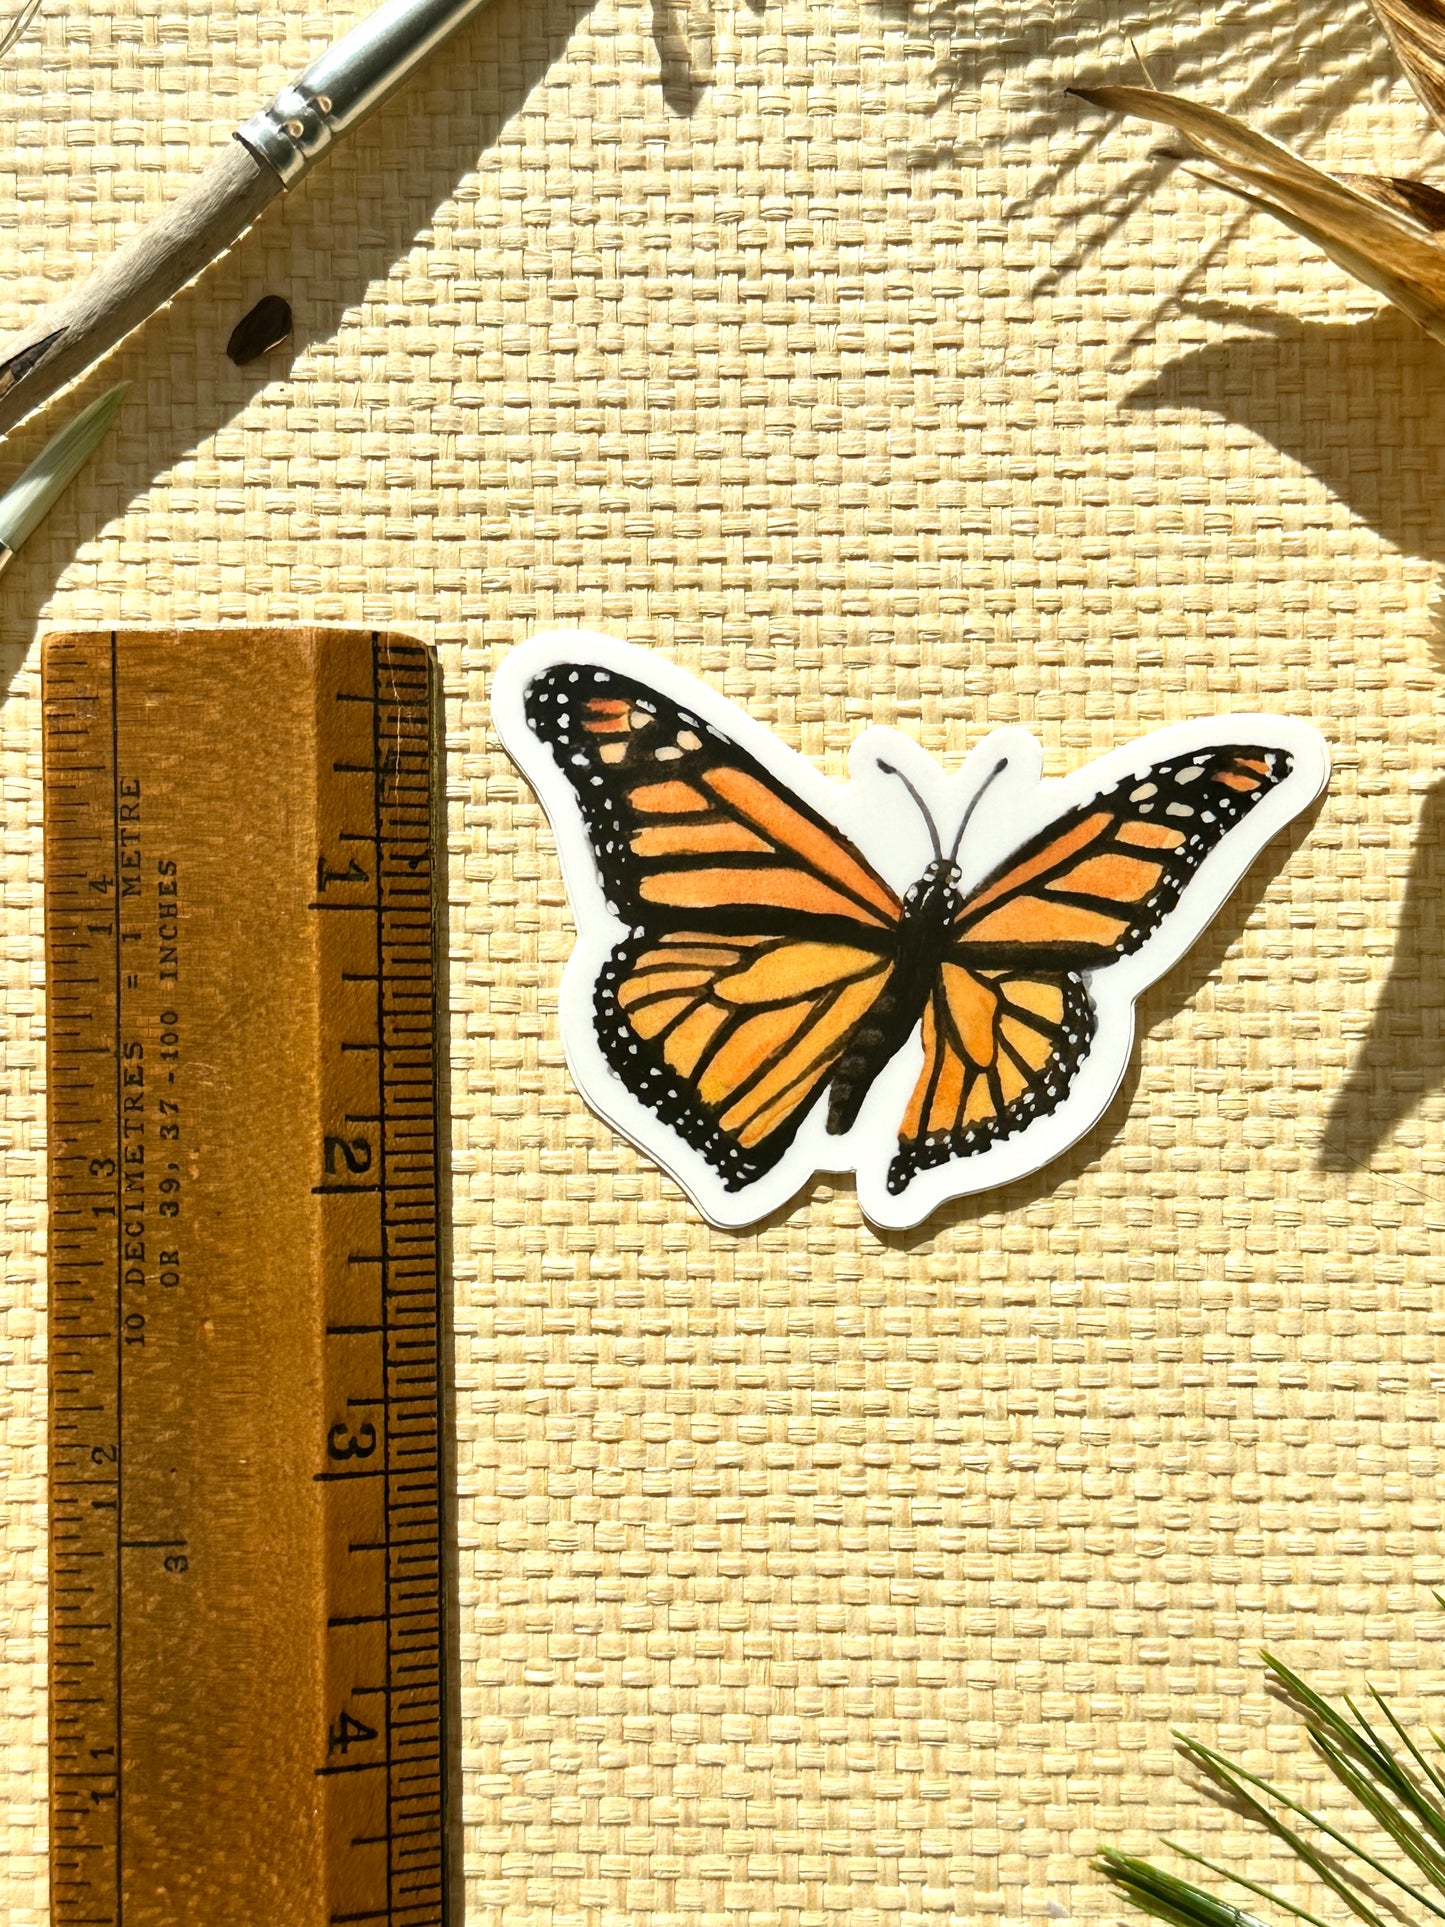 Monarch Butterfly in Flight Vinyl Decal Bumper Sticker